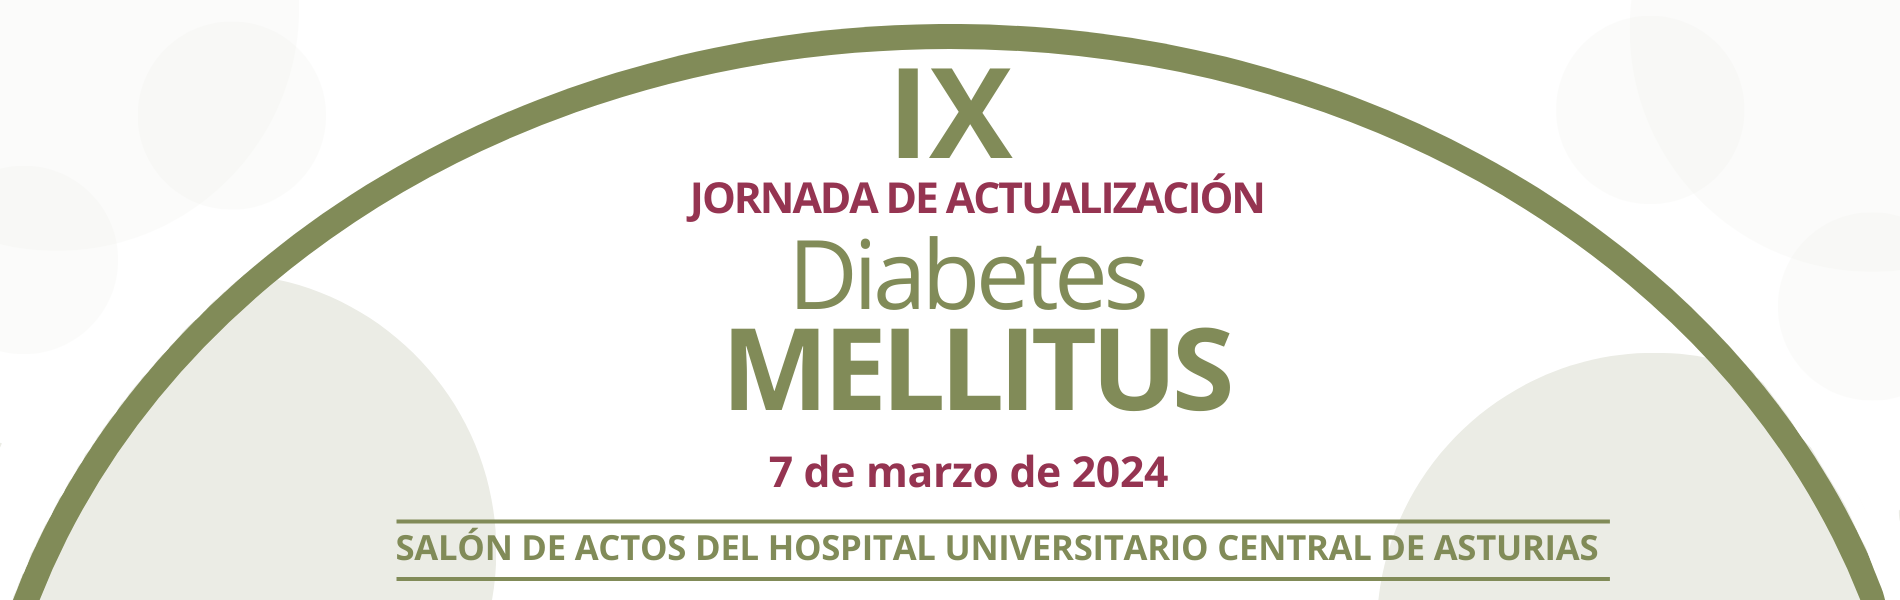 IX Jornada Diabetes Mellitus 2024